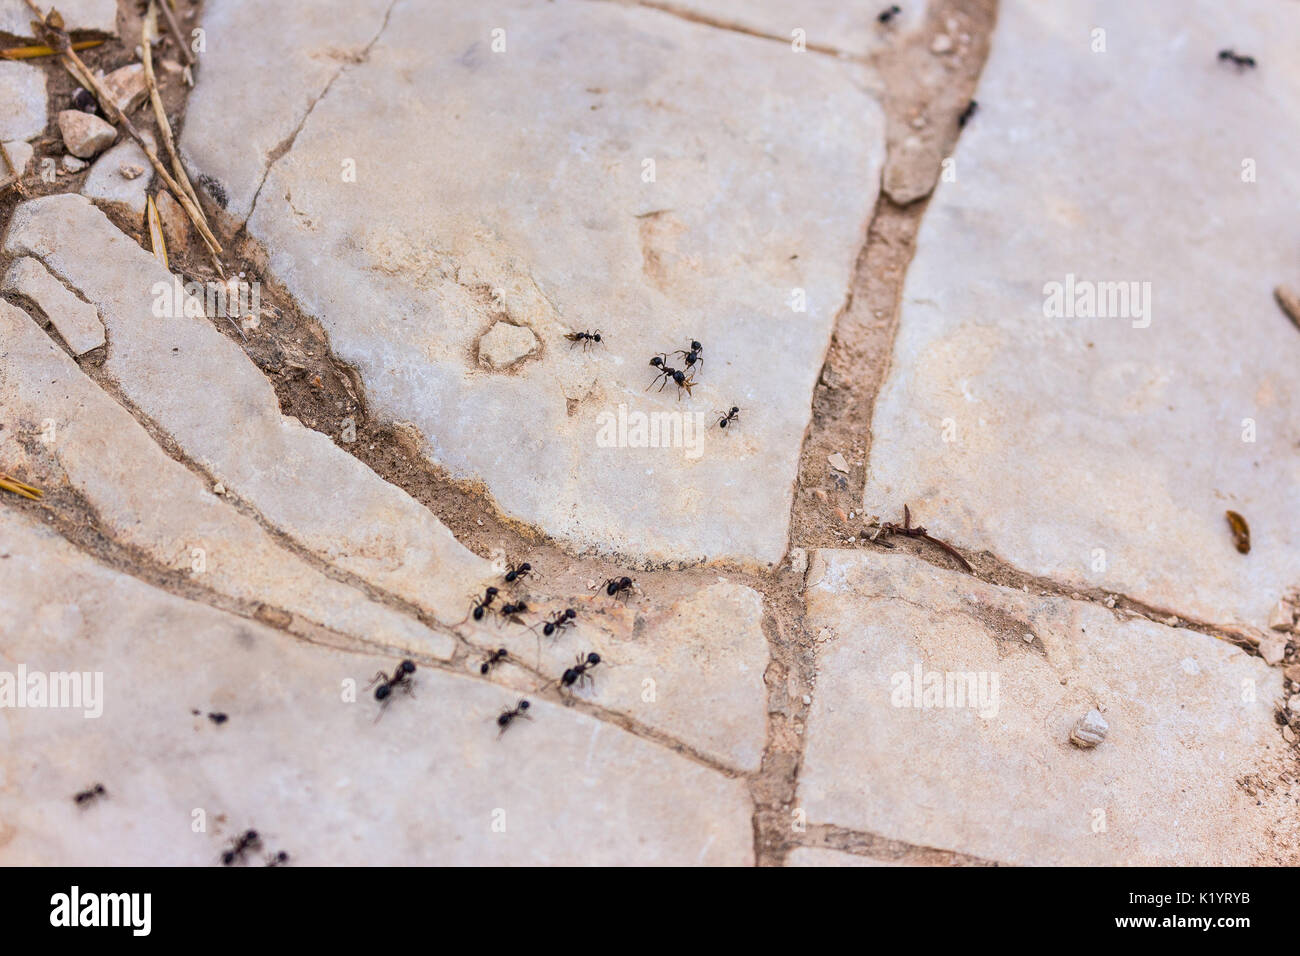 Formicidae ant sentiero di insetti la raccolta di cibo per colonia su pietre bianche nella natura mediterranea Foto Stock